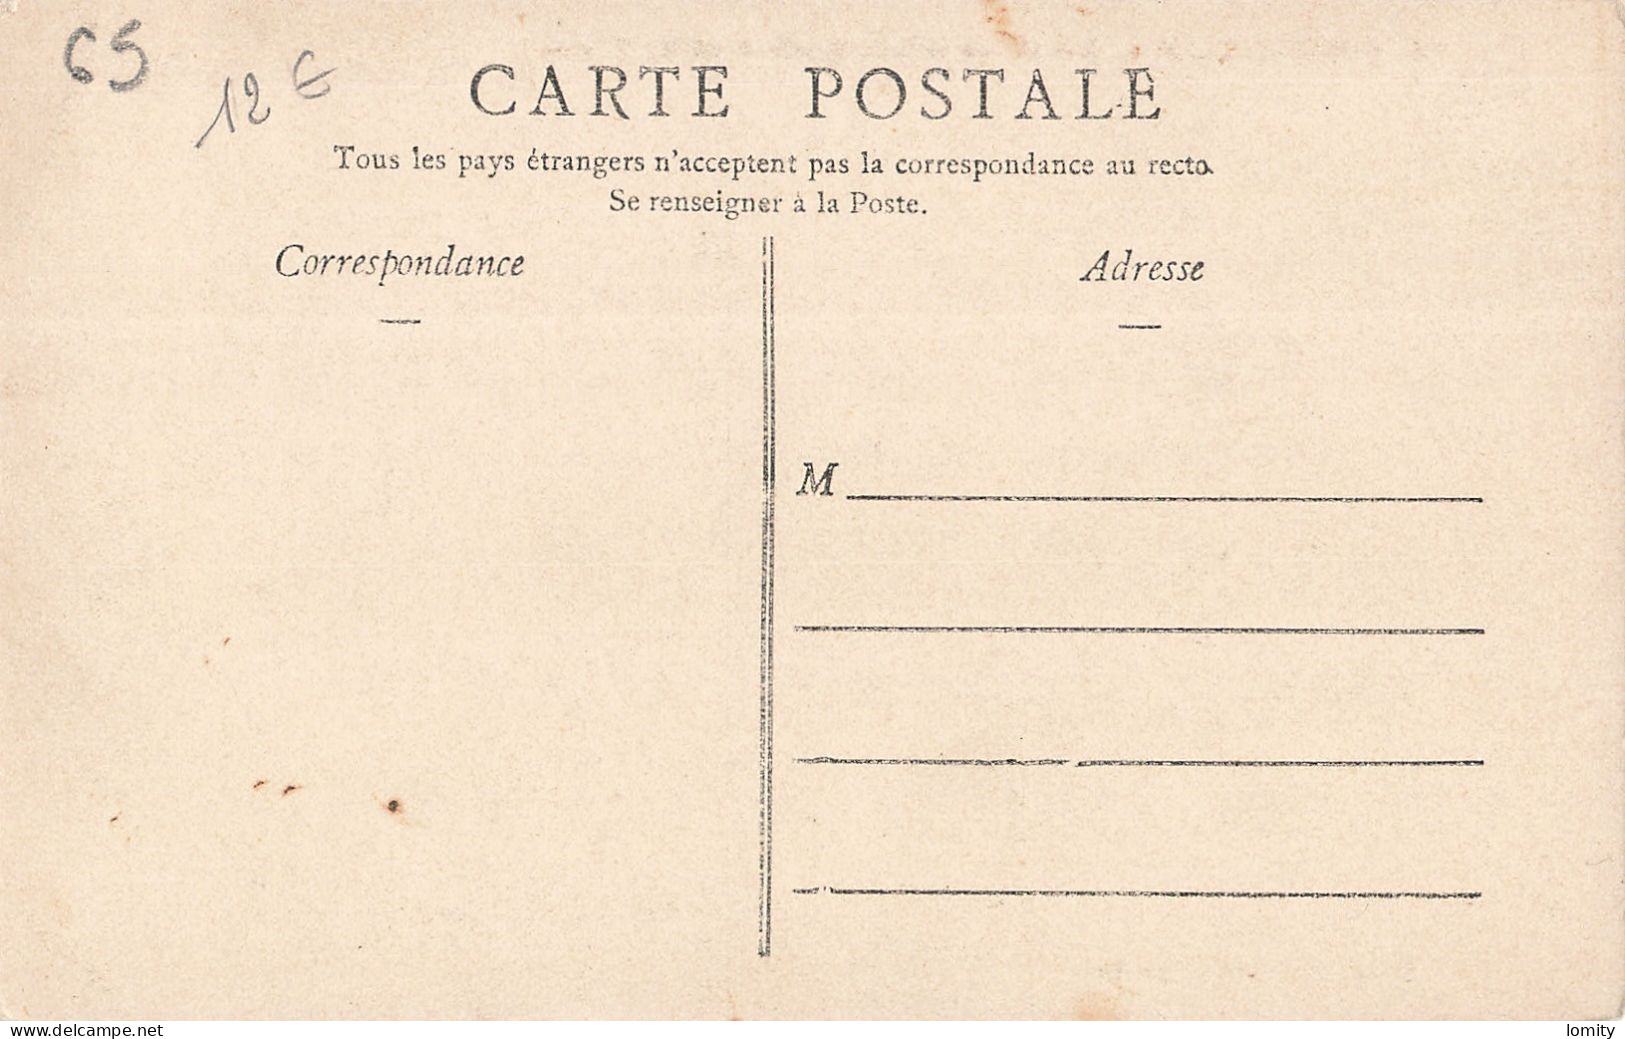 Destockage lot de 40 cartes postales CPA Hautes Pyrénées Gavarnie Cauterets Lourdes